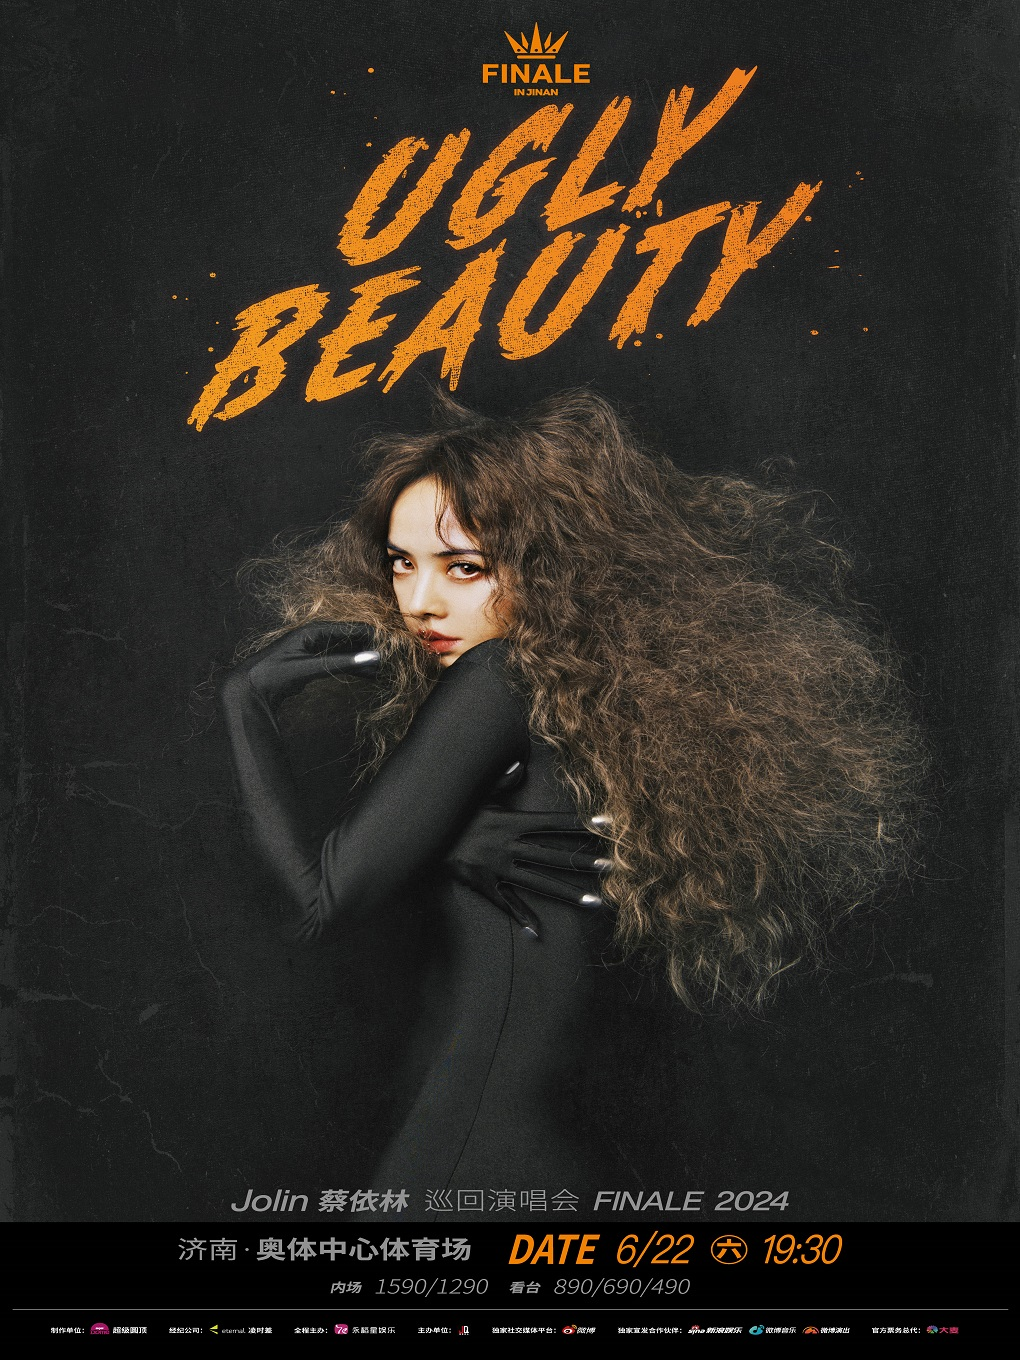 蔡依林 Ugly Beauty 2024 巡回演唱会 FINALE 济南站